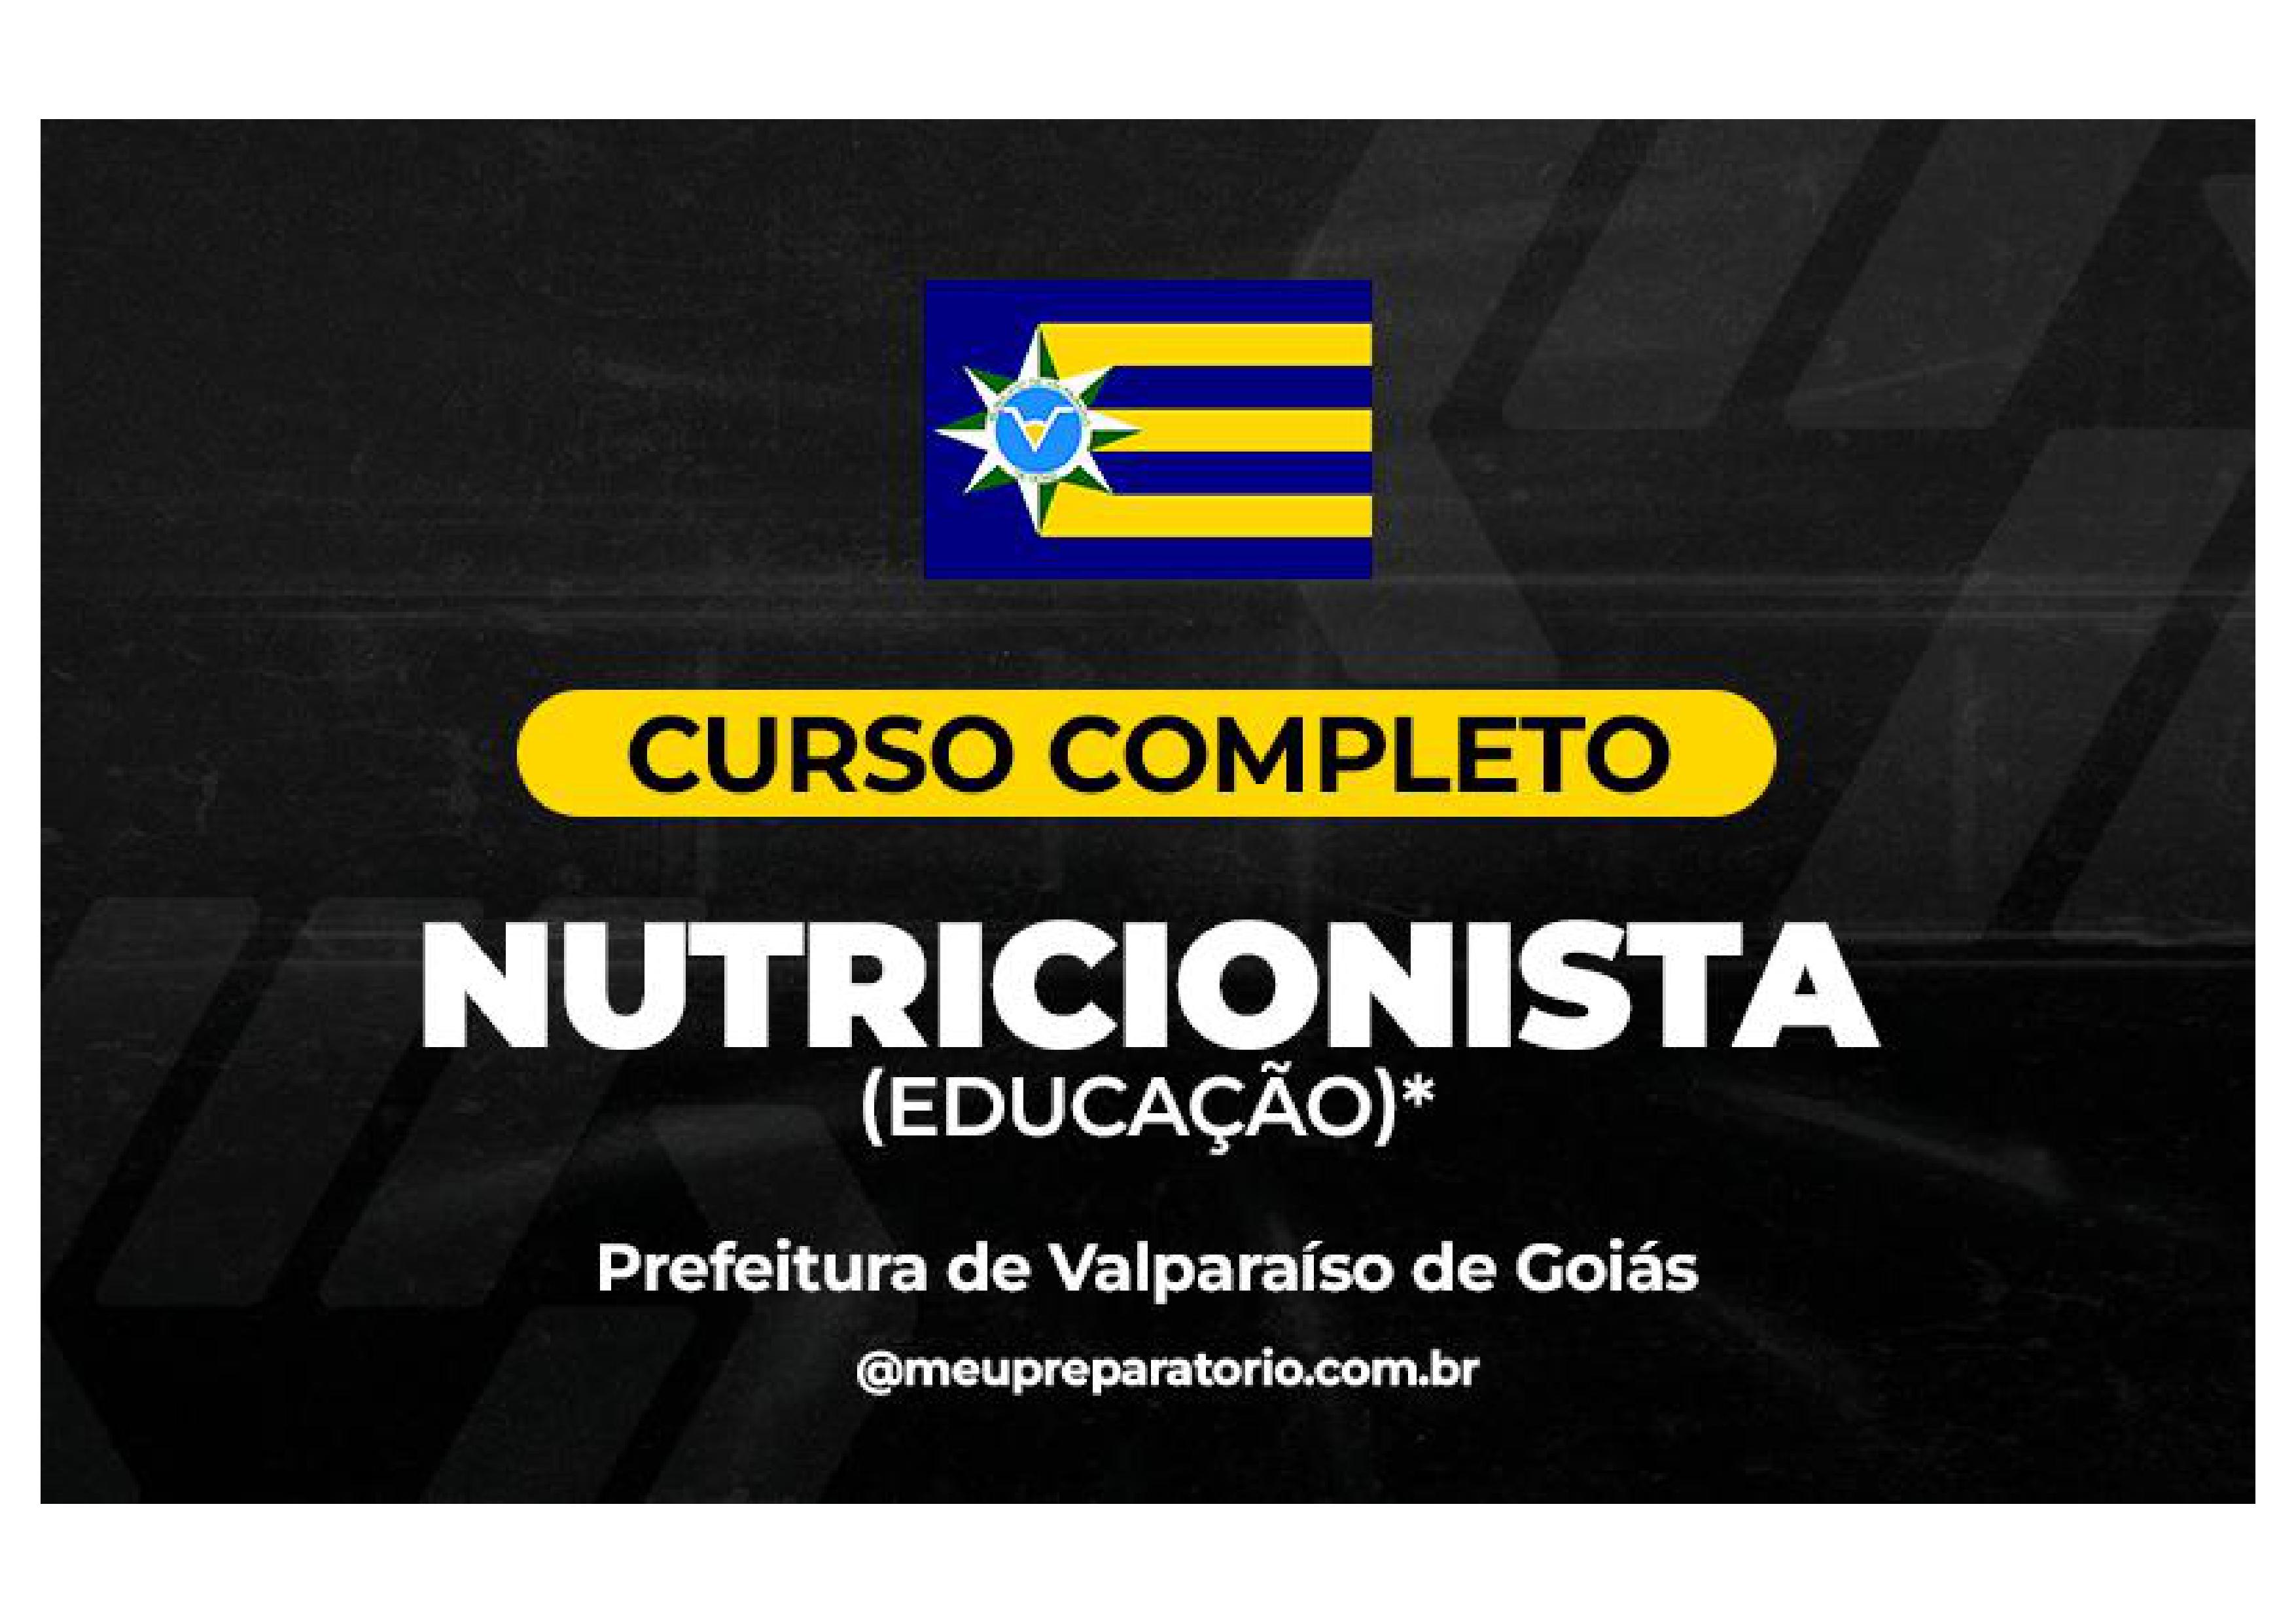 Nutricionista (Educação) - Valparaíso (GO)